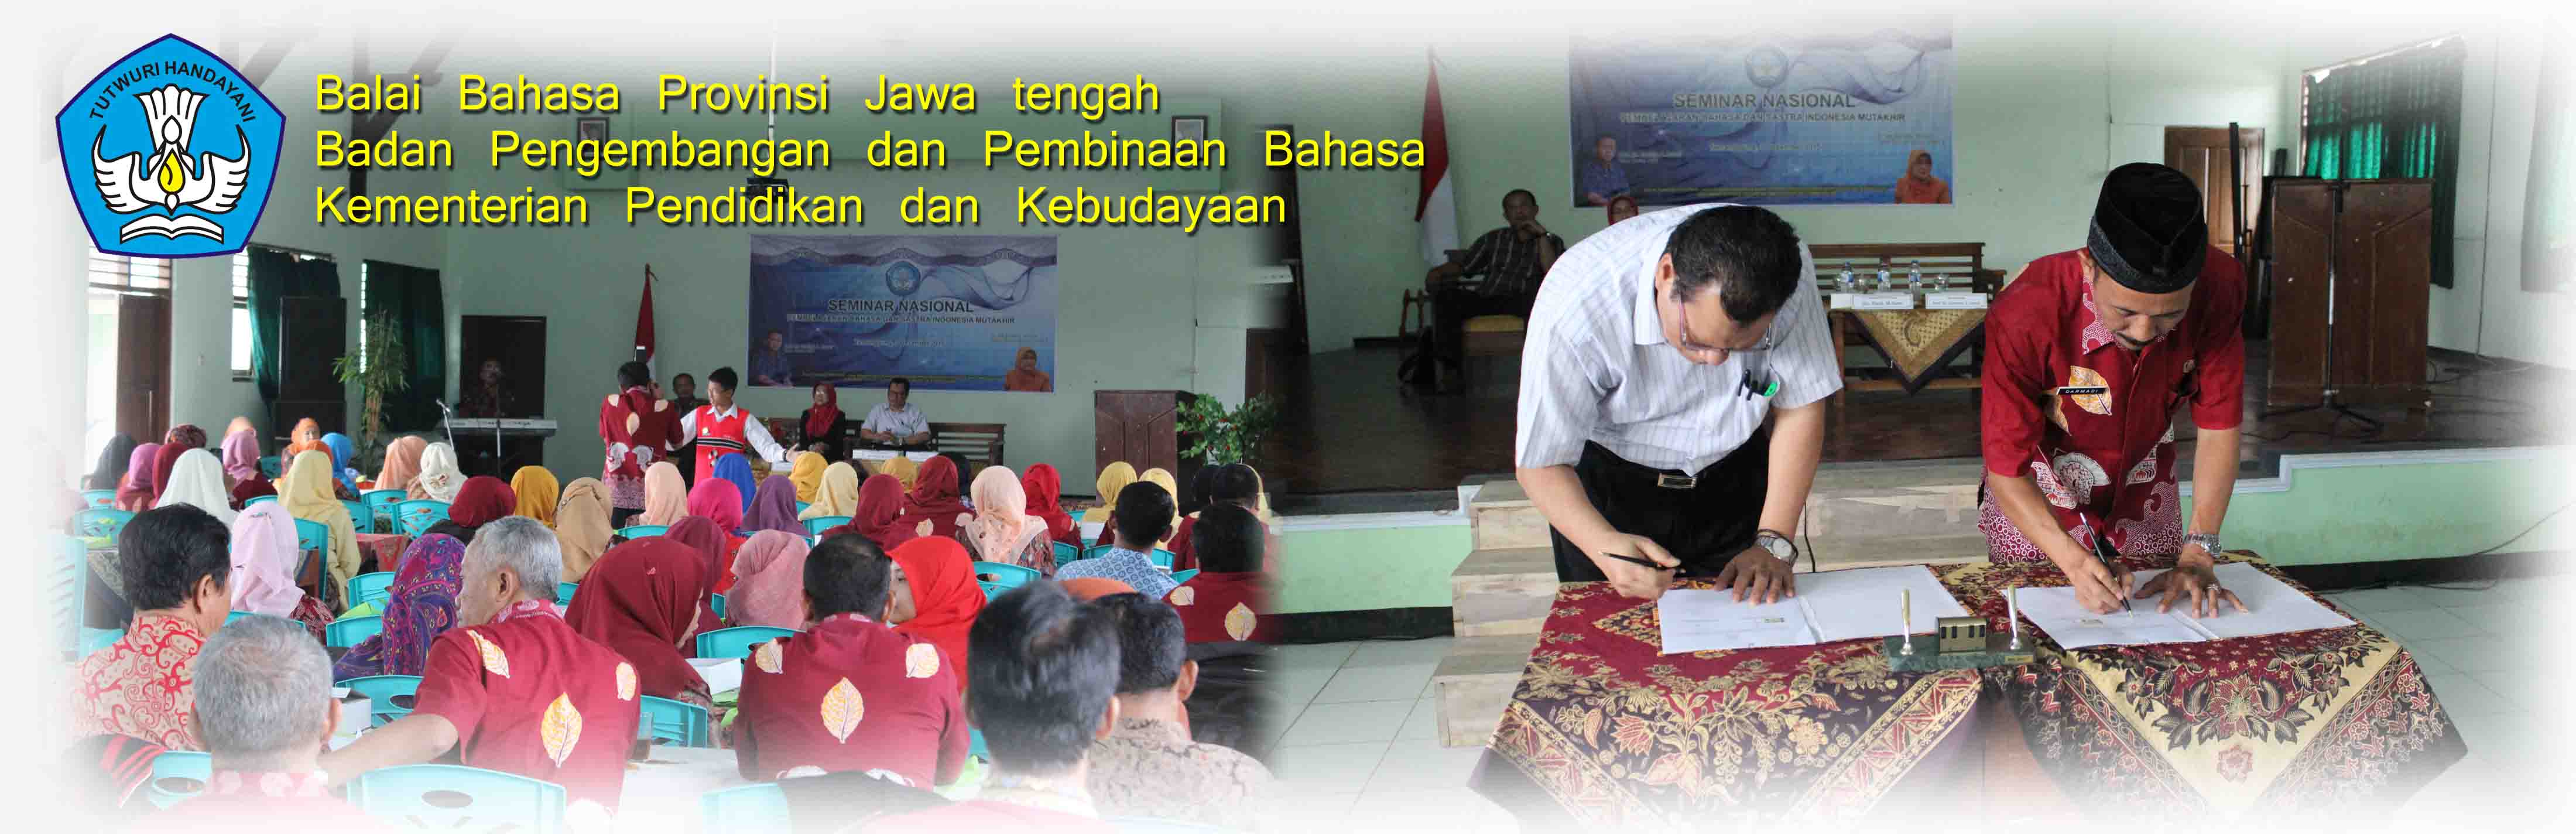 Seminar Pembelajaran Bahasa dan Sastra Kembali Digelar Balai Bahasa Provinsi Jawa Tengah